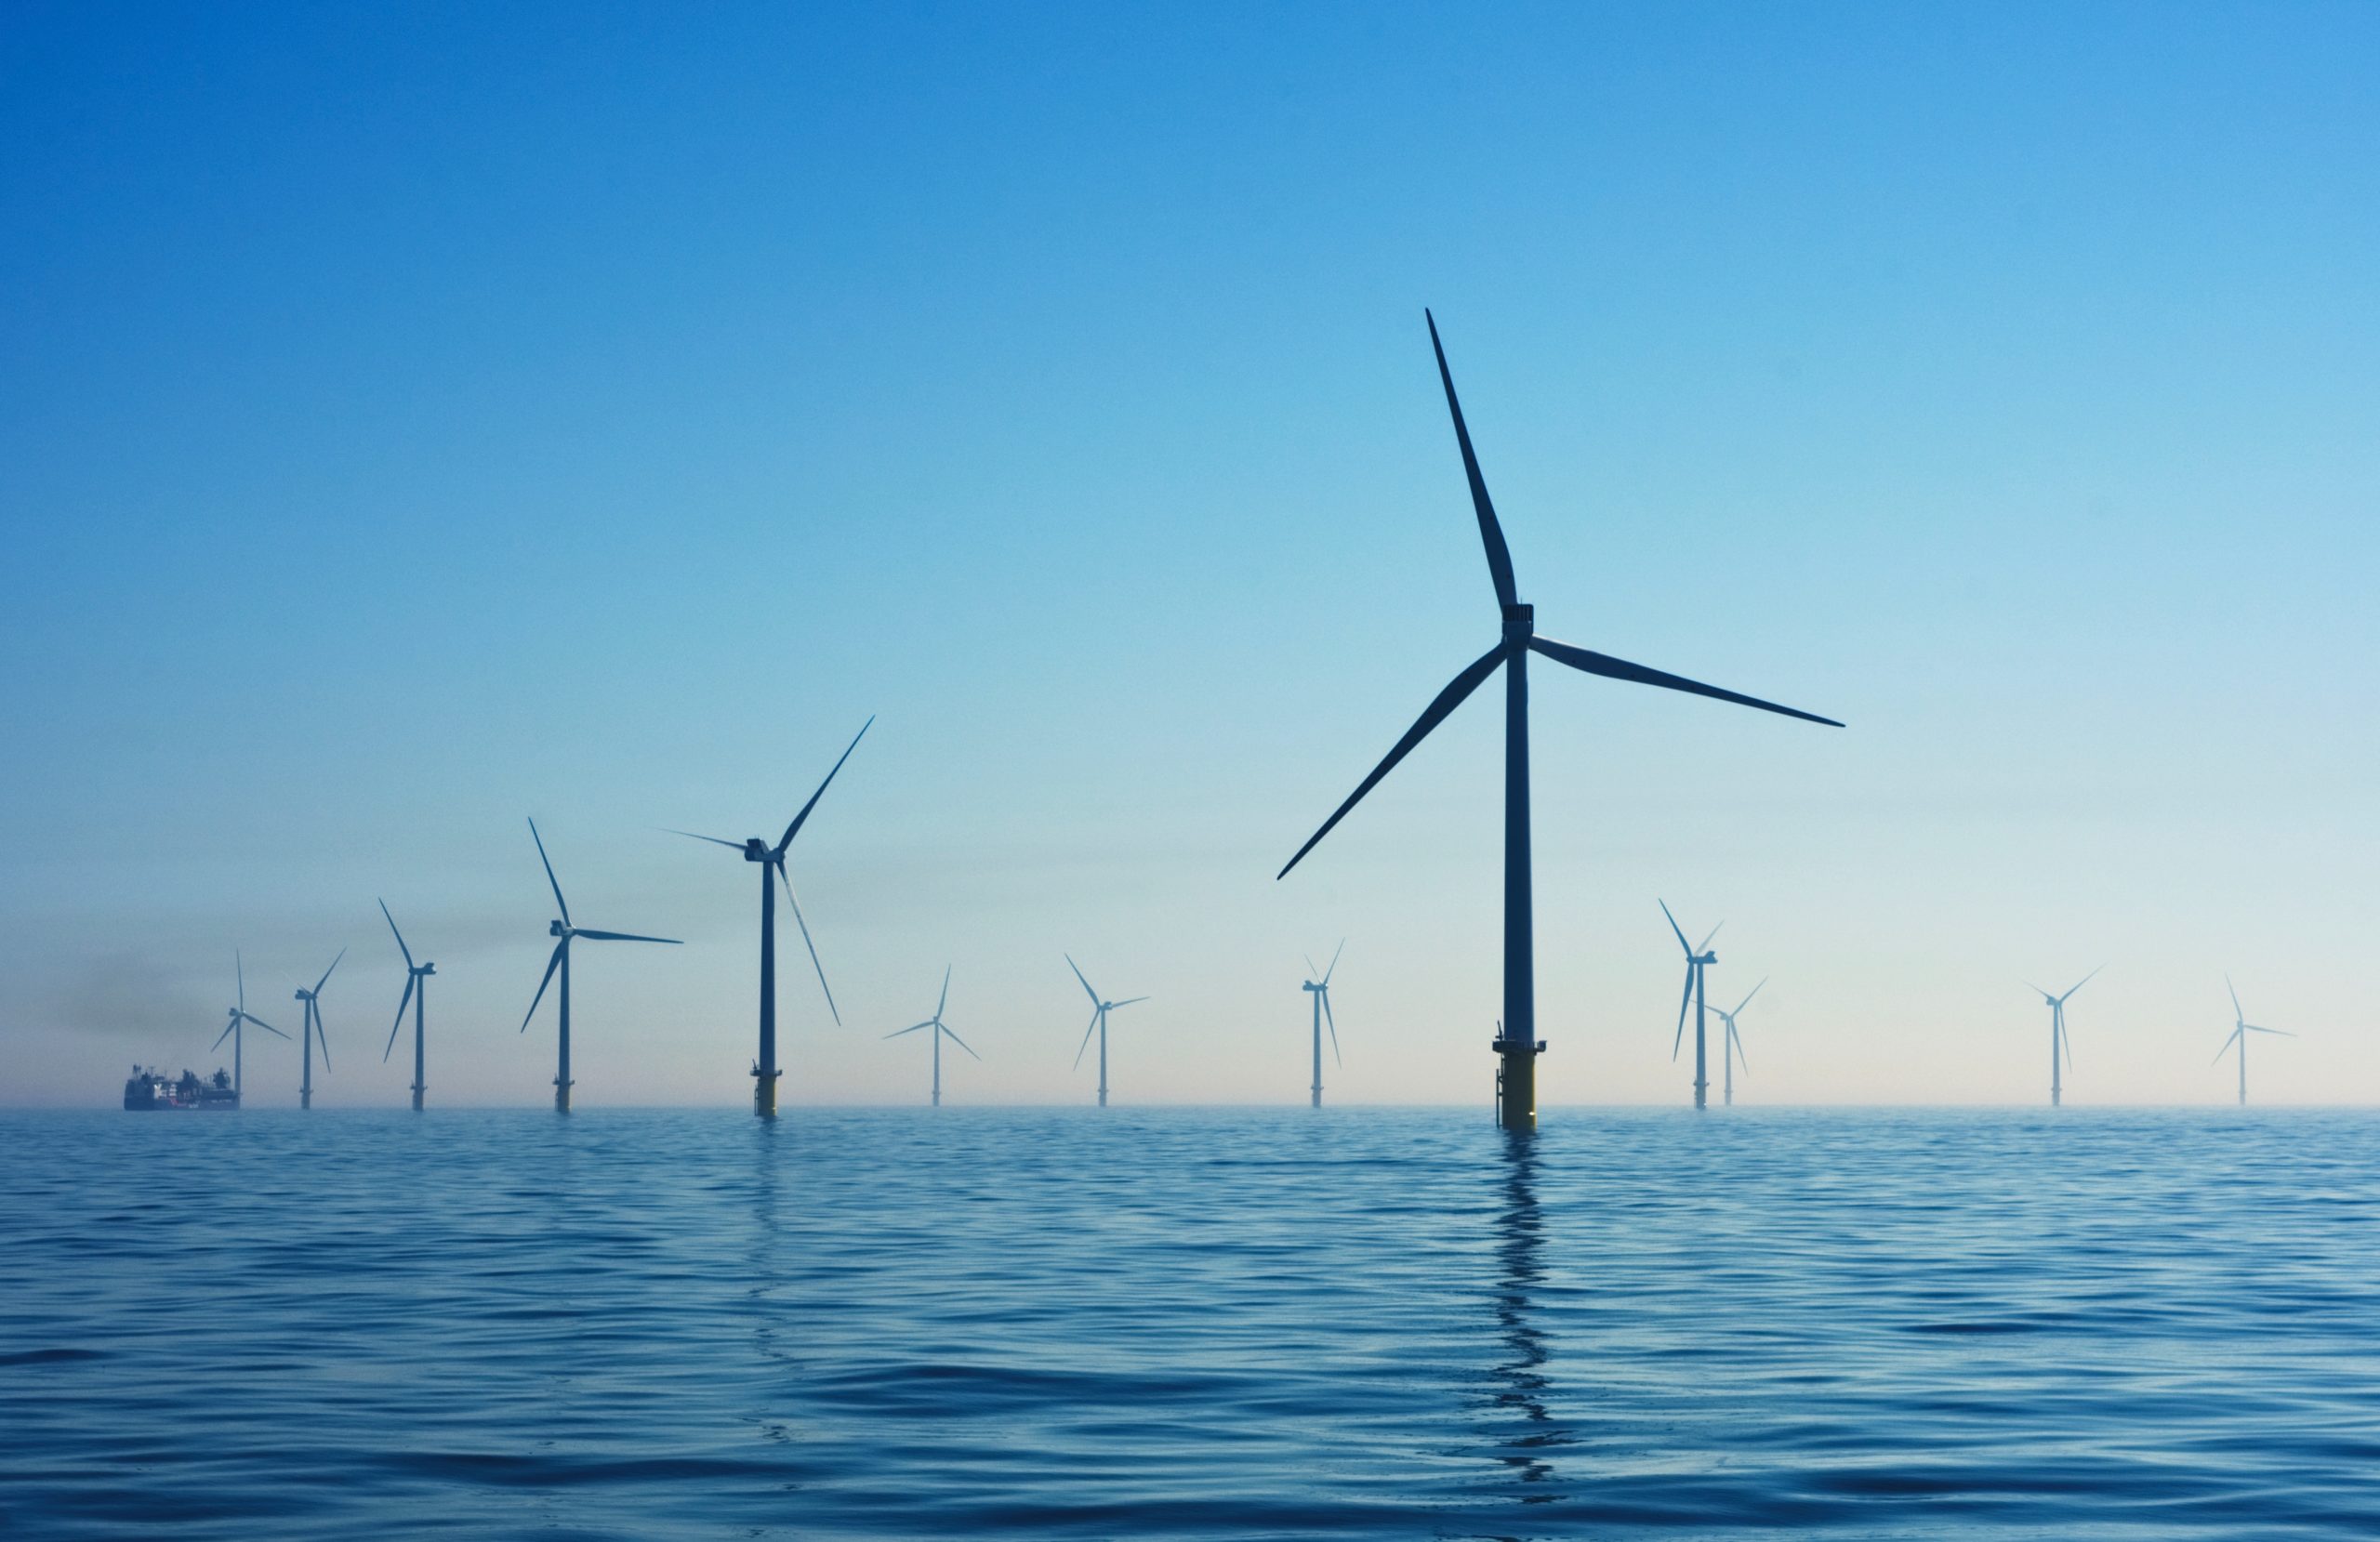 Éolien offshore : faut-il choisir entre climat et biodiversité ?